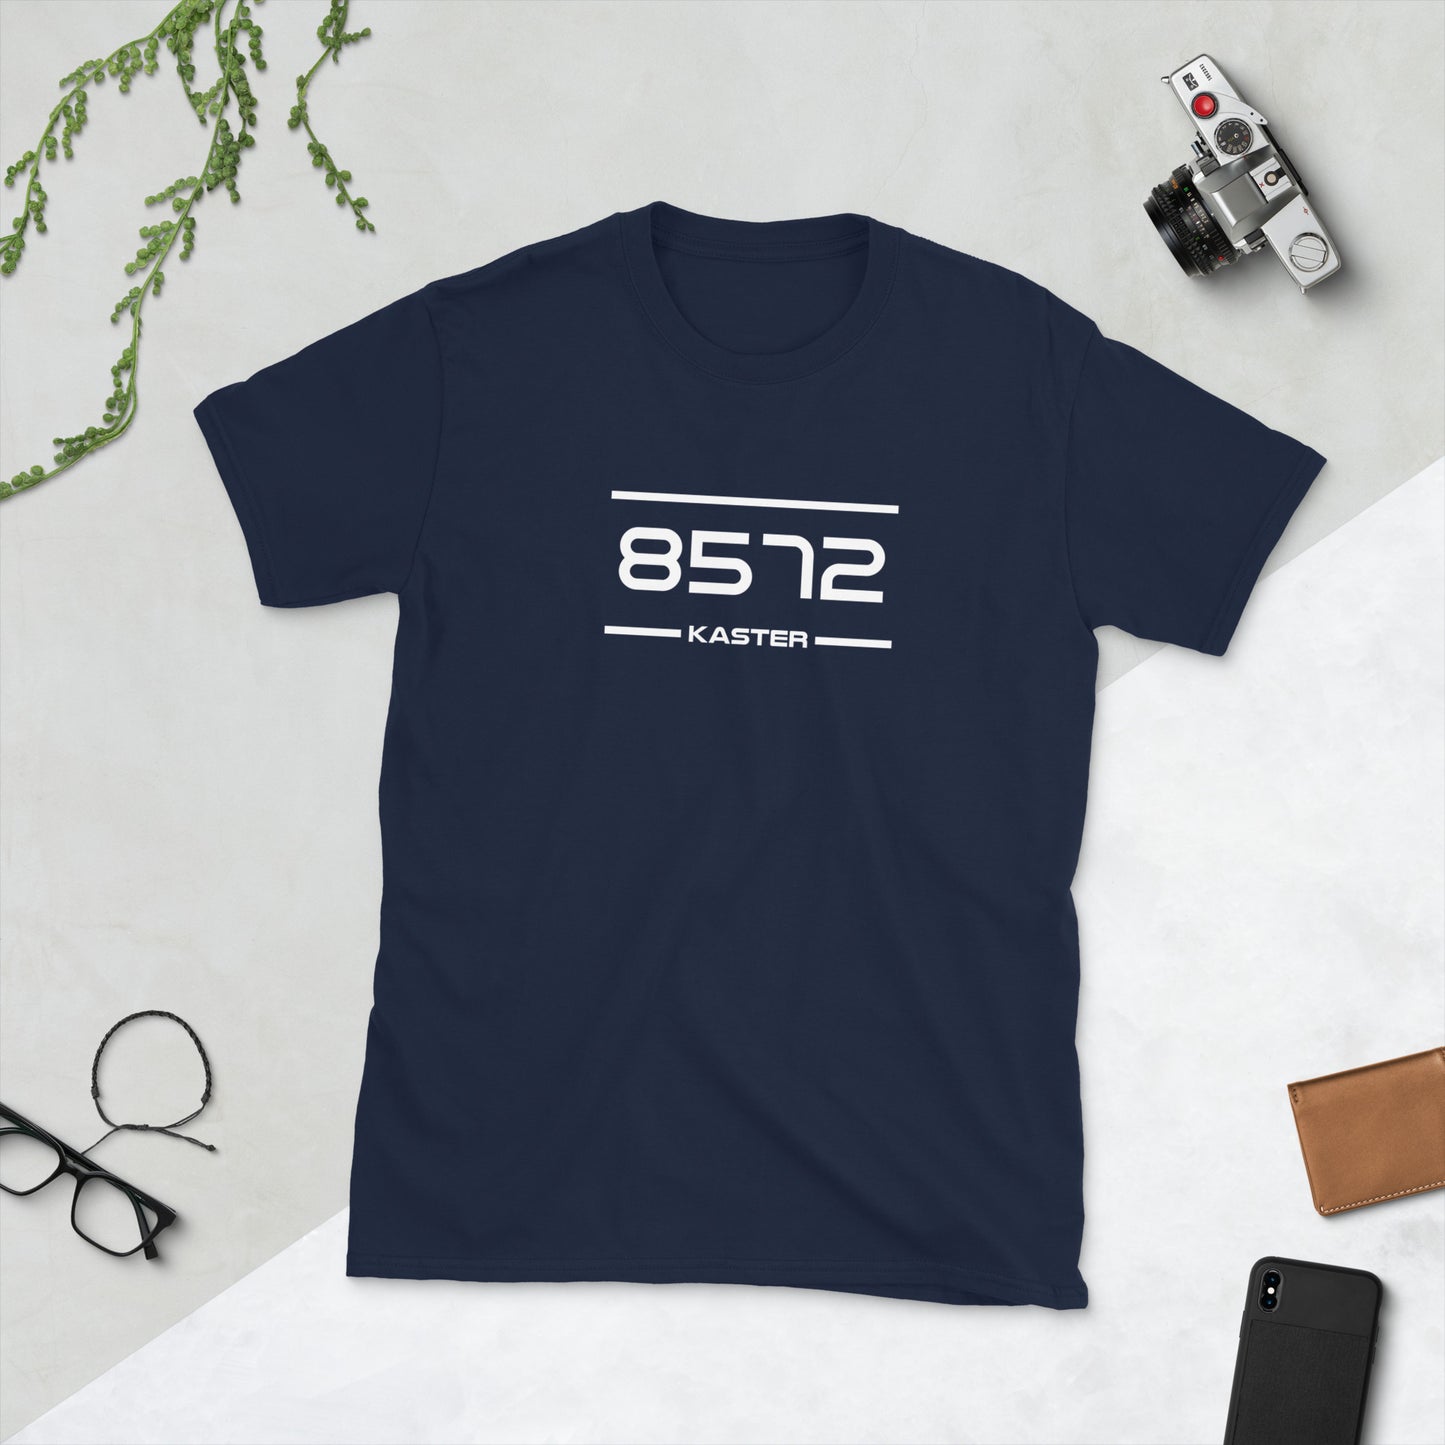 Tshirt - 8572 - Kaster